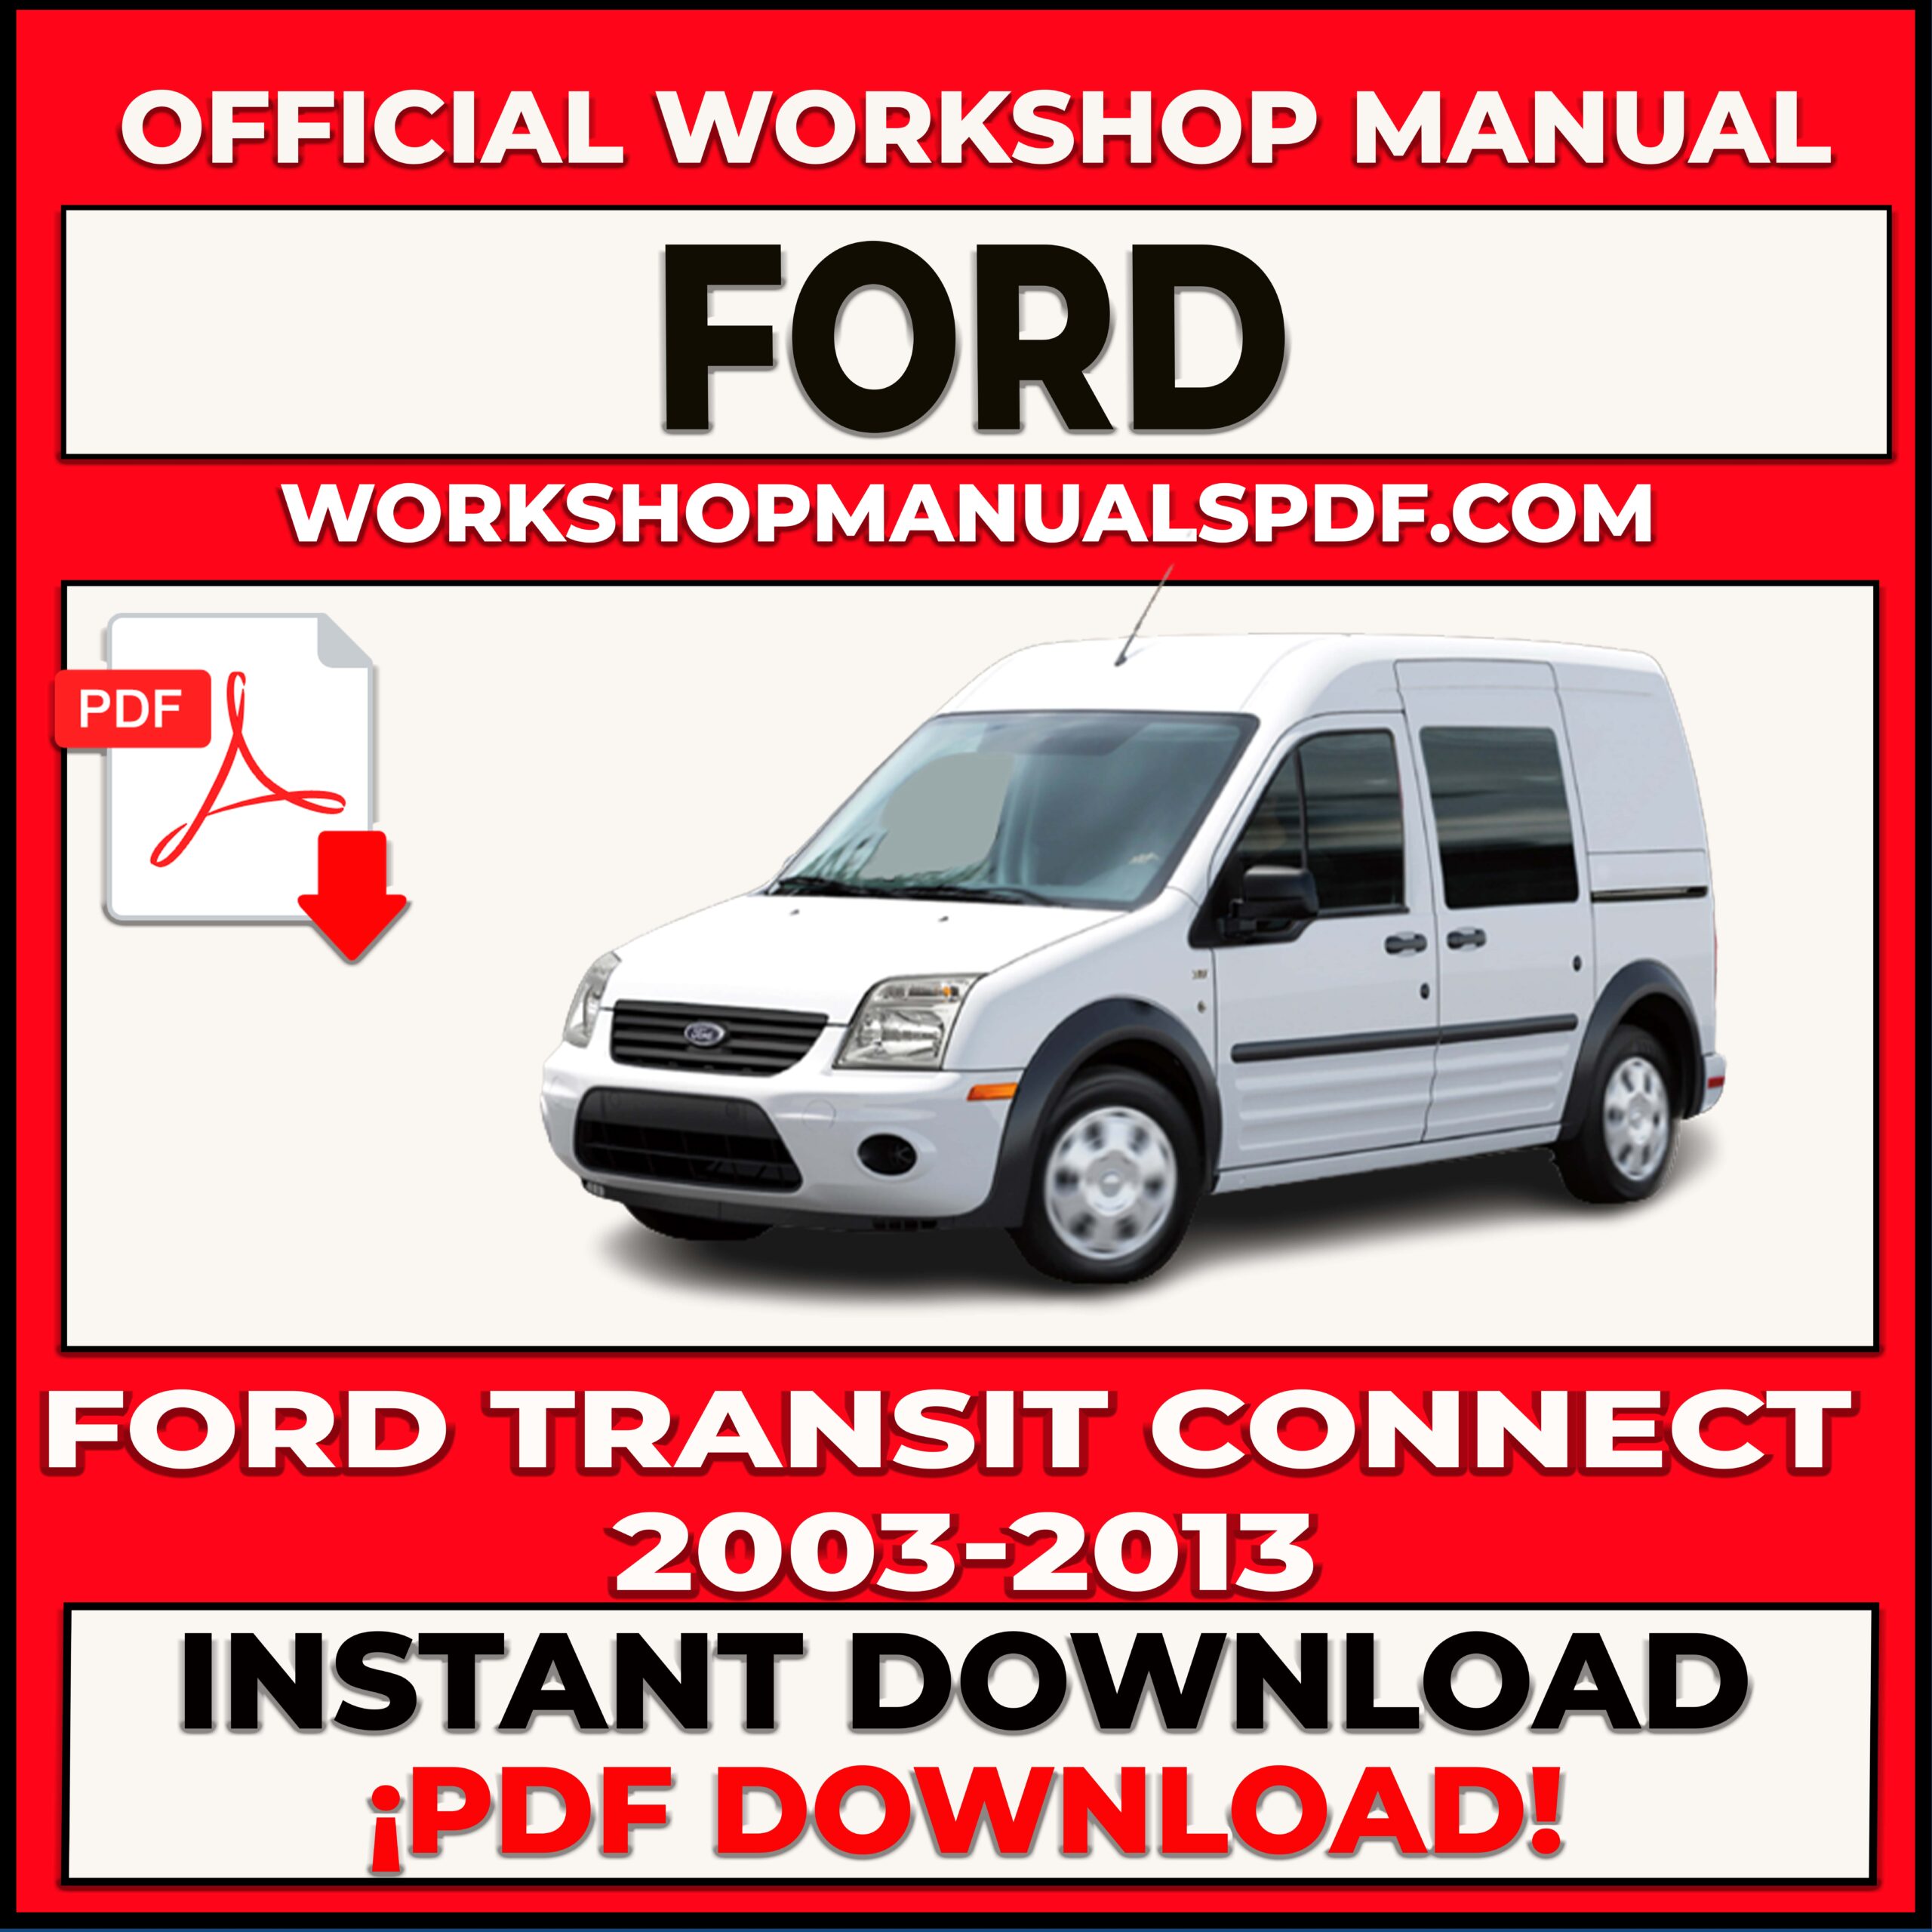 Ford Transit Connect 2003-2013 Workshop Repair Manual